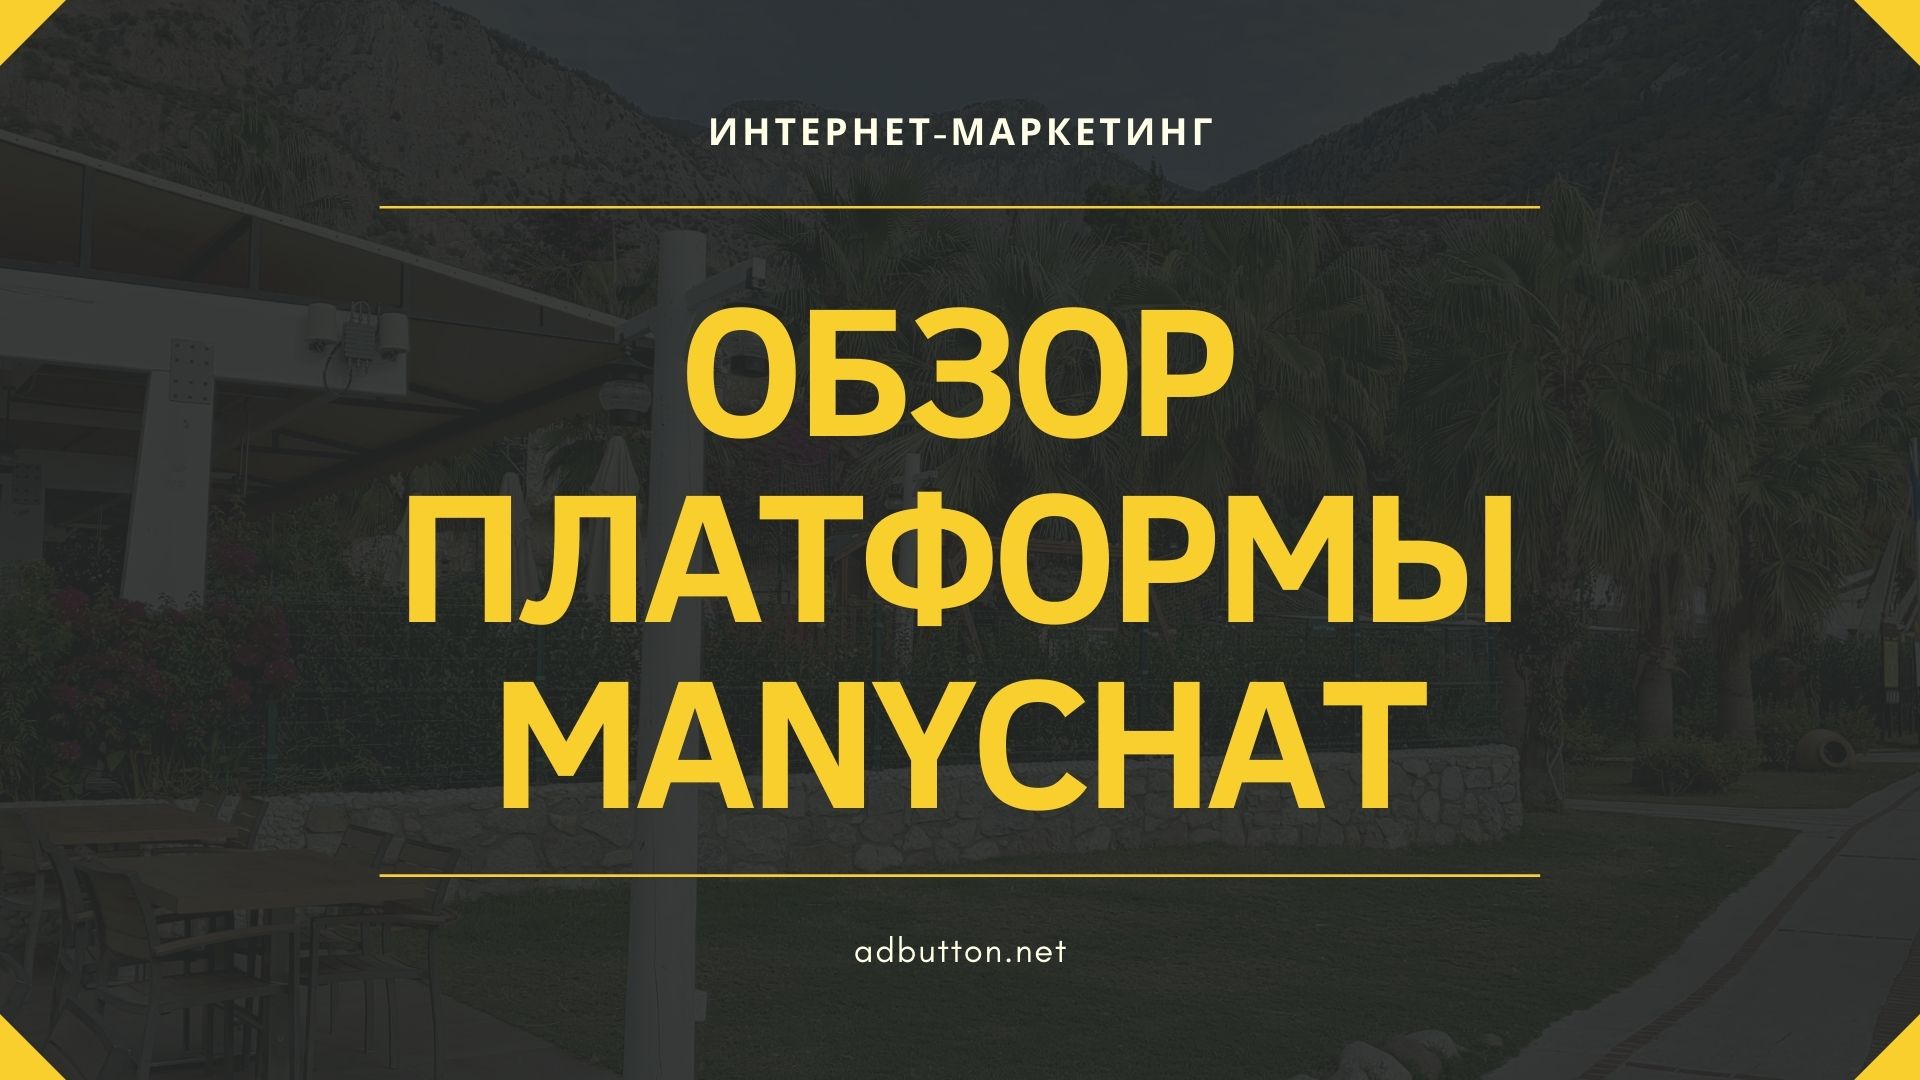 Чат-бот ManyChat — обзор платформы и возможностей создания бота для маркетинга